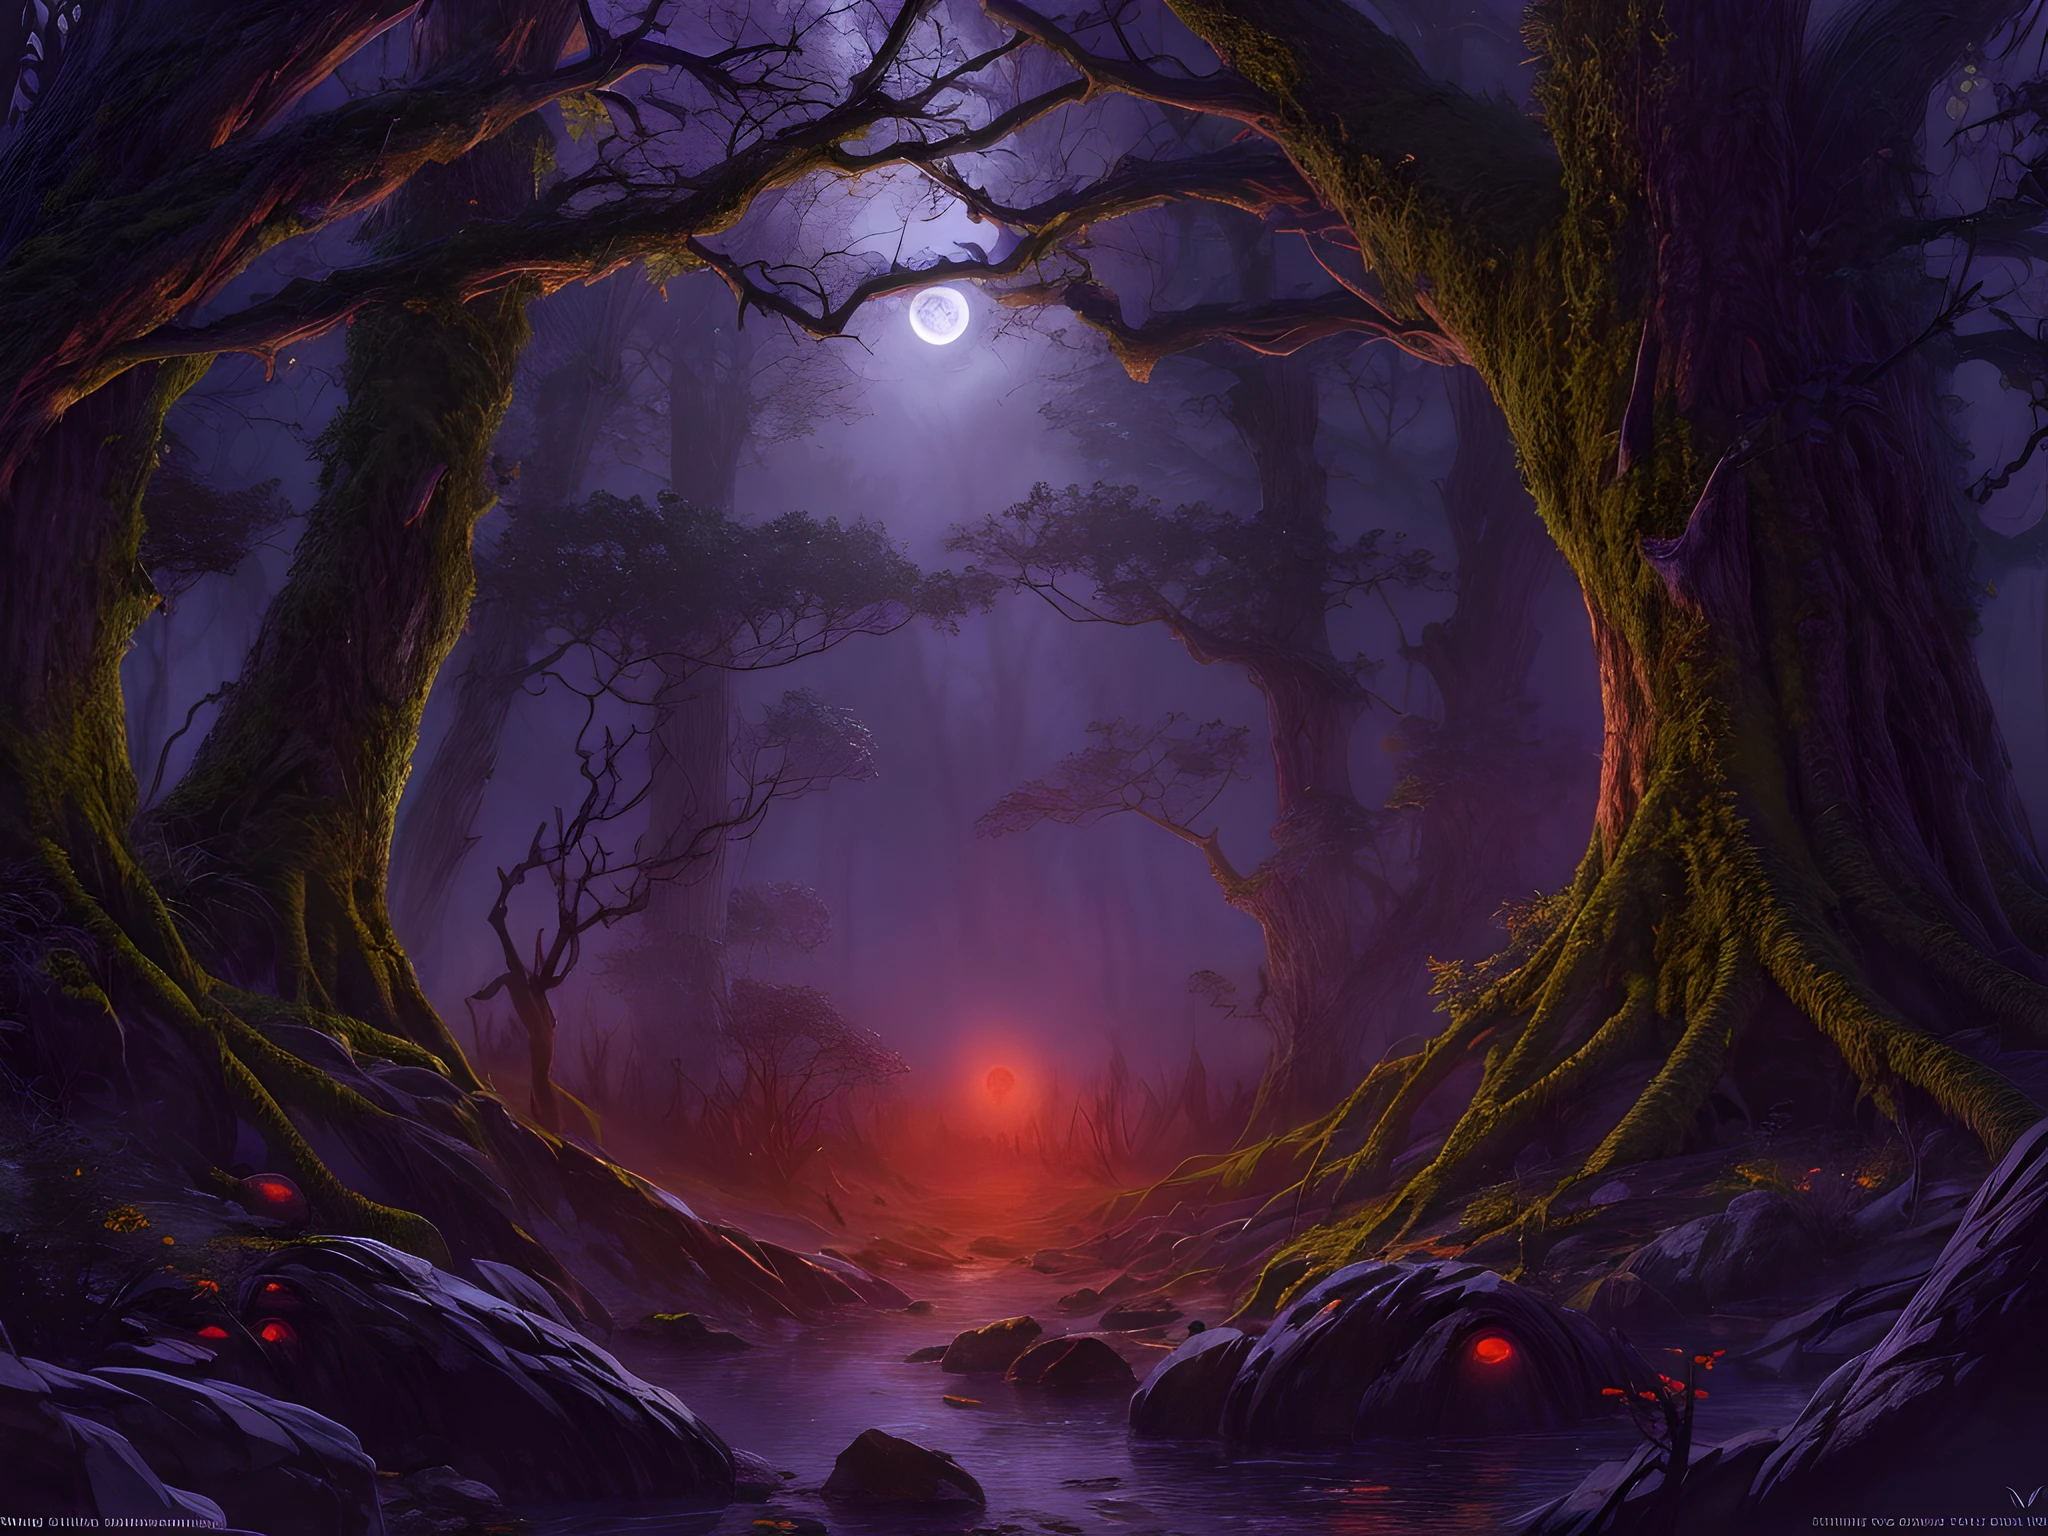 art fantastique, Art du RPG, plan ultra large, brut, photoréaliste, une image d&#39;une forêt sombre et fantastique, brume s&#39;élevant du sol, c&#39;est la nuit, la lune se lève à l&#39;horizon, pourtant il y a un (paire d&#39;yeux rouges de prédateur) tu vois entre les arbres, fond de forêt fantastique sombre, meilleure qualité, 16k, [ultra détaillé], chef-d&#39;œuvre, meilleure qualité, (ultra détaillé), Tout le corps, plan ultra large, photoréalisme